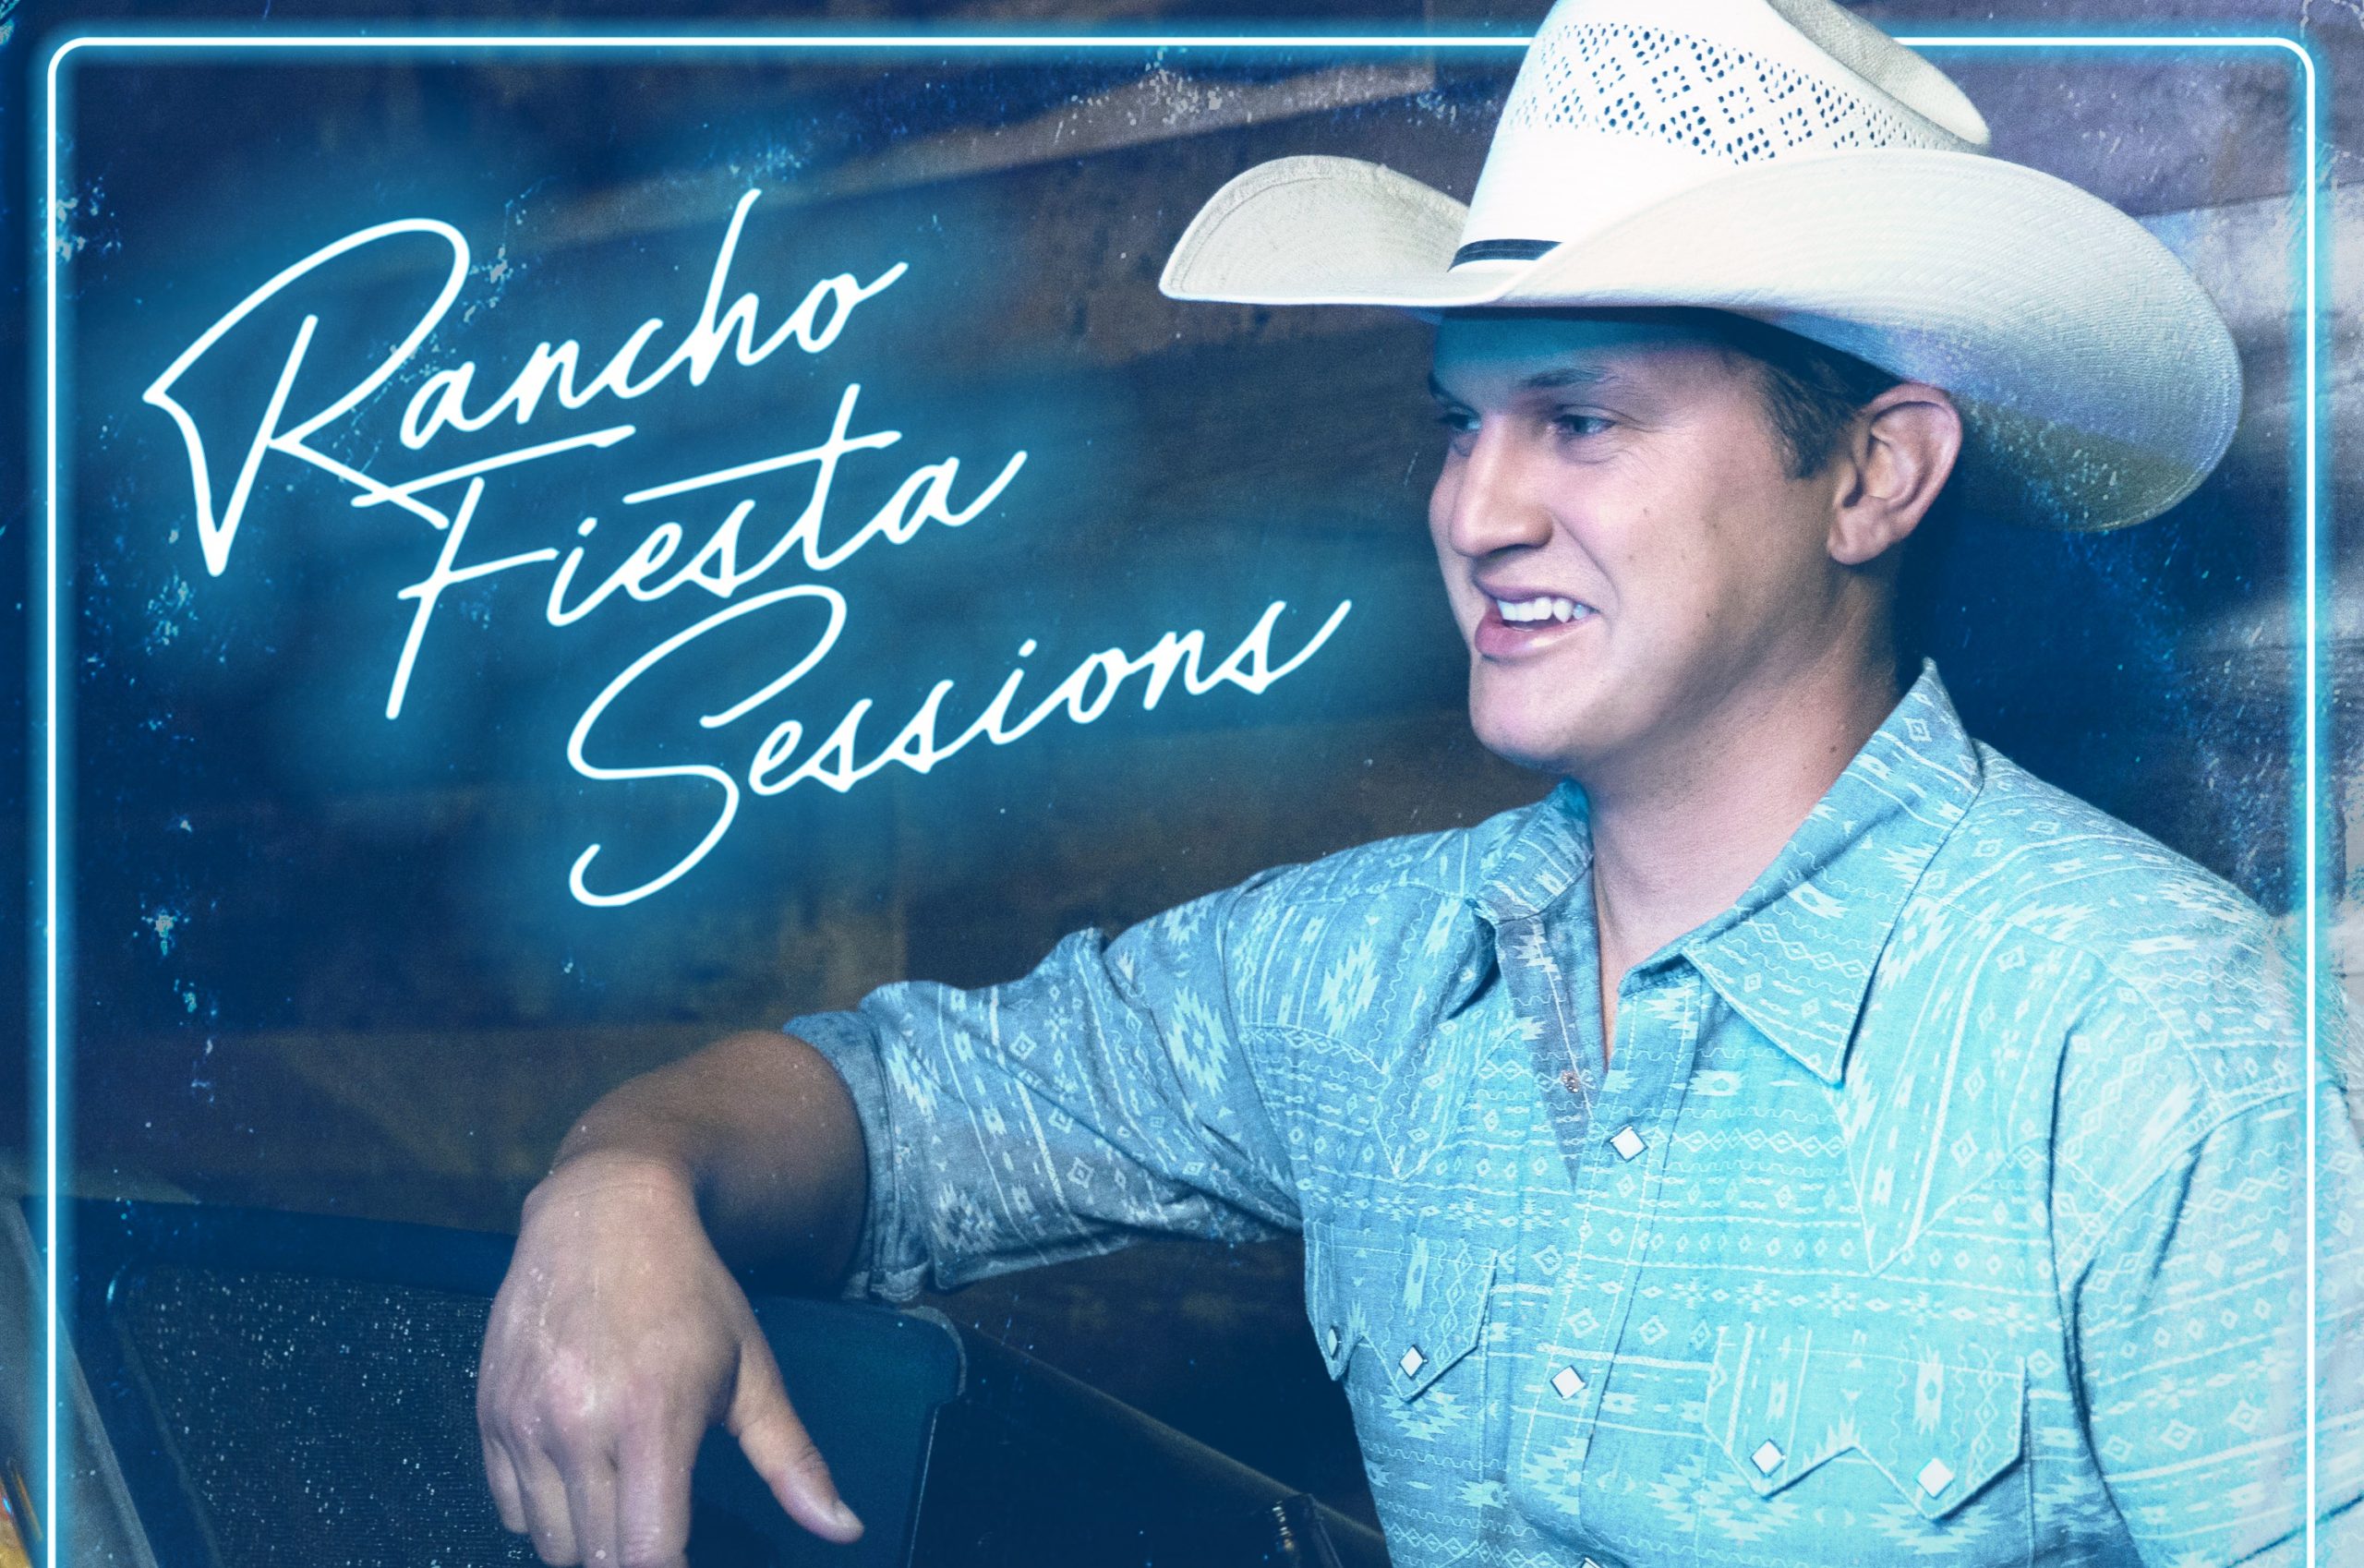 Jon Pardi Drops Surprise Live Album, 'Rancho Fiesta Sessions' Sounds